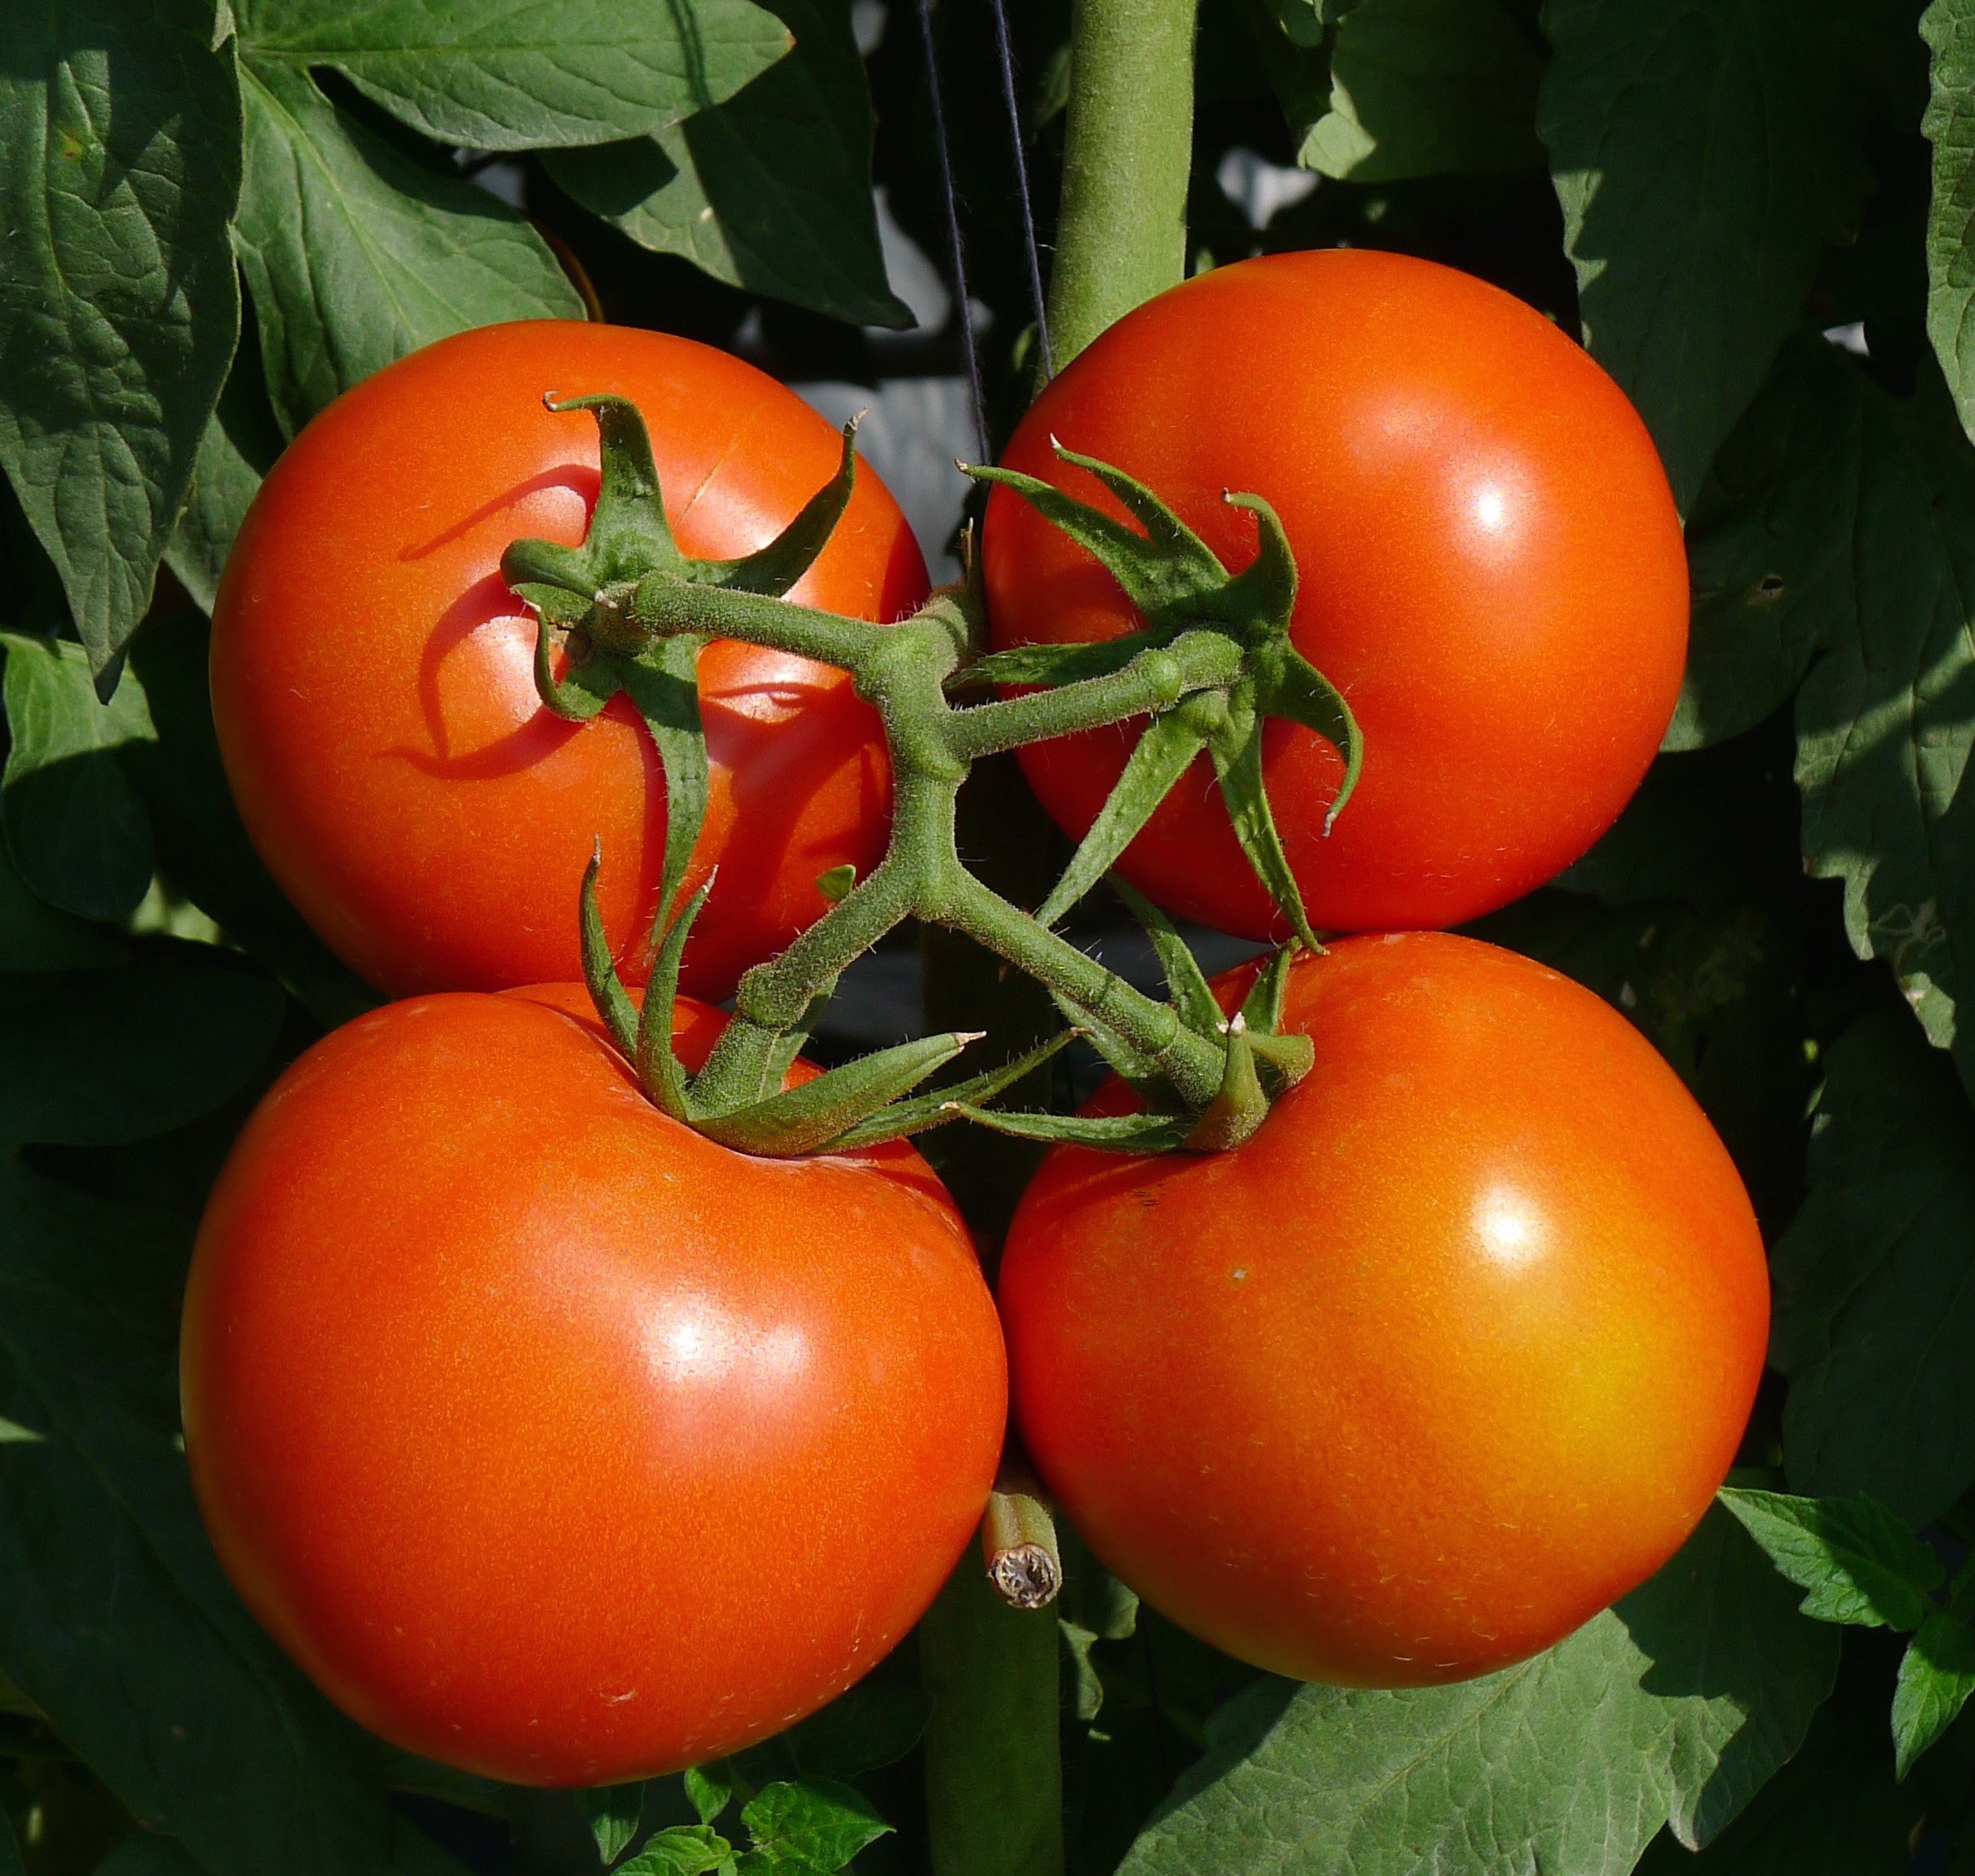  阿尔泰1631番茄